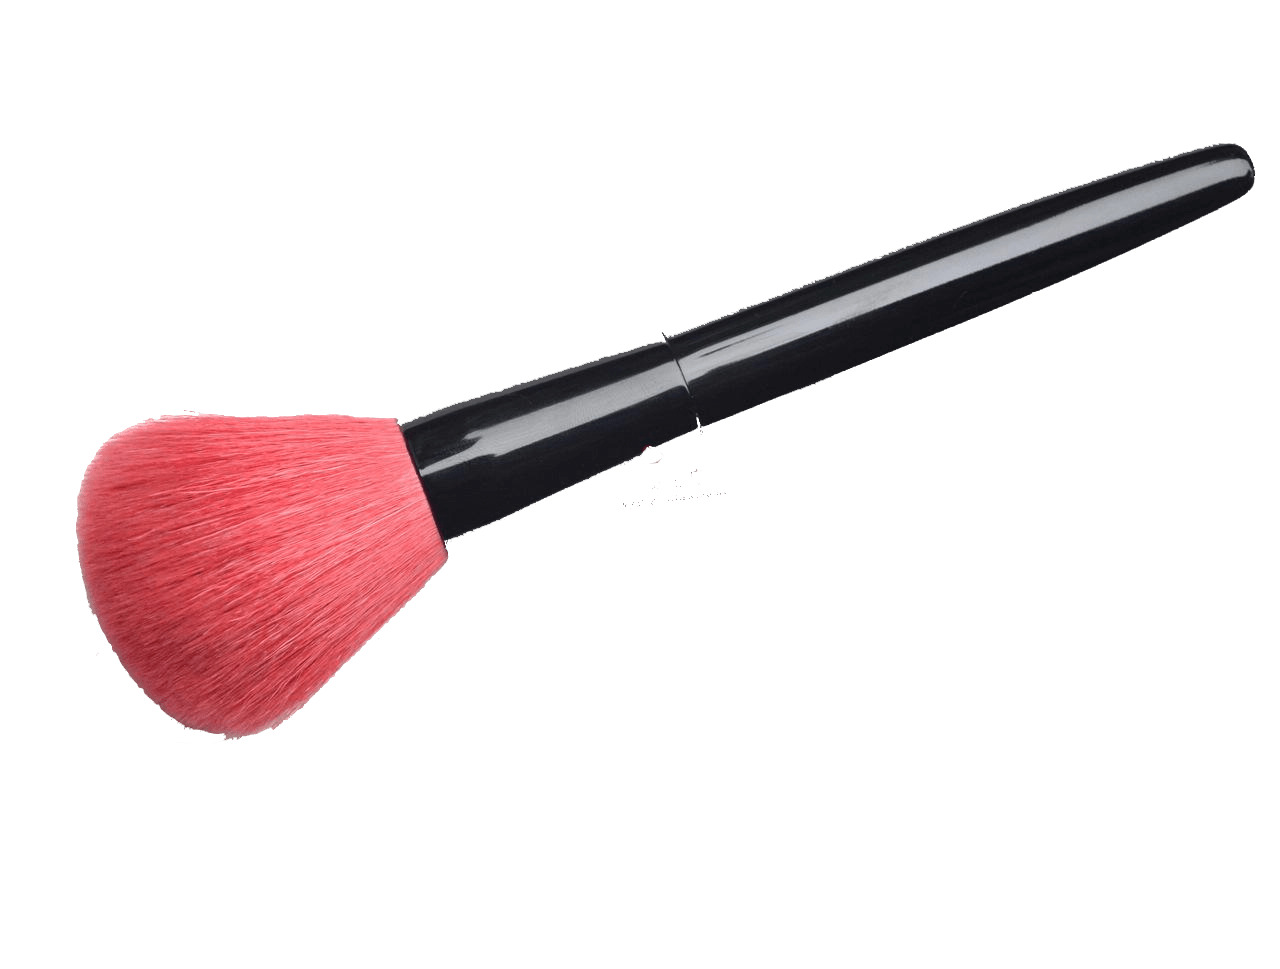 Pink Makeup Brush icons